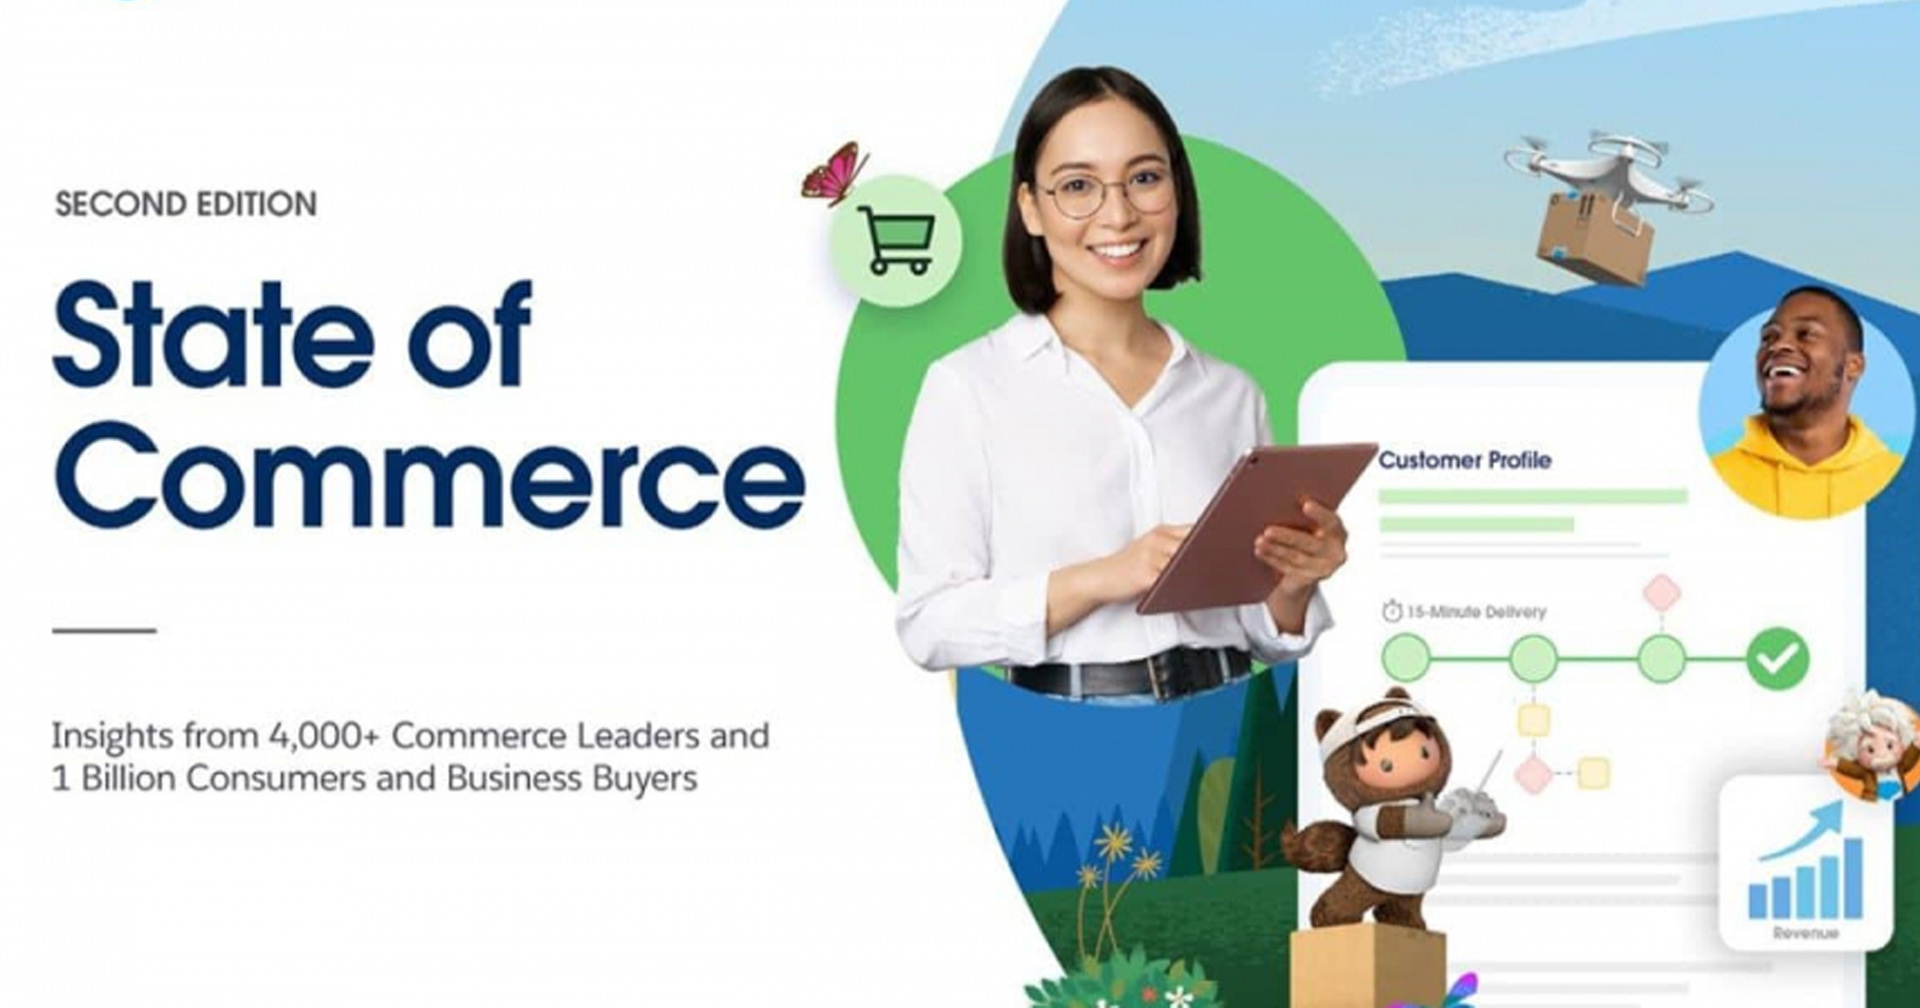 รายงานใหม่จาก ‘Salesforce’ พบว่ารูปแบบการซื้อขายสินค้าในประเทศไทยปัจจุบันมี ‘ดิจิทัล ทรานส์ฟอร์เมชั่น’ เป็นตัวเร่ง